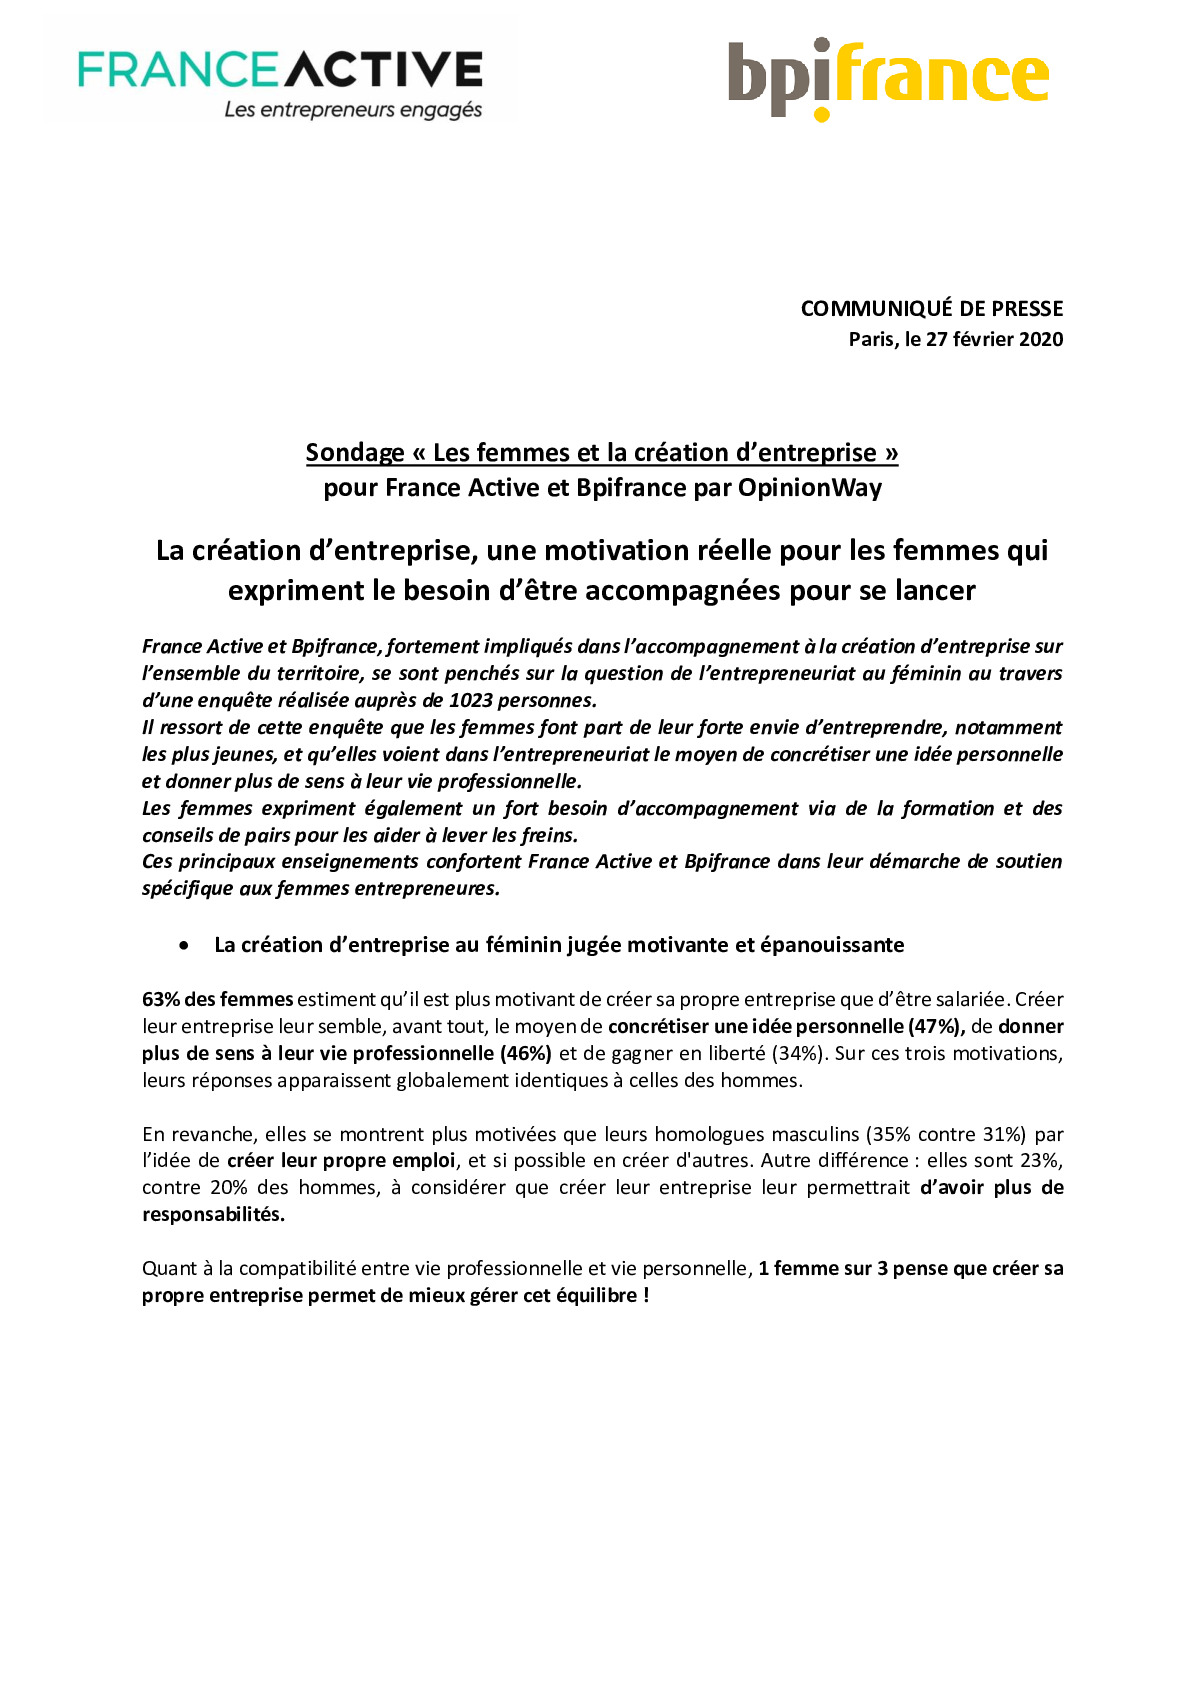 2020 02 27 – CP Bpifrance France Active – Etudes Femmes entrepreneures v2-pdf